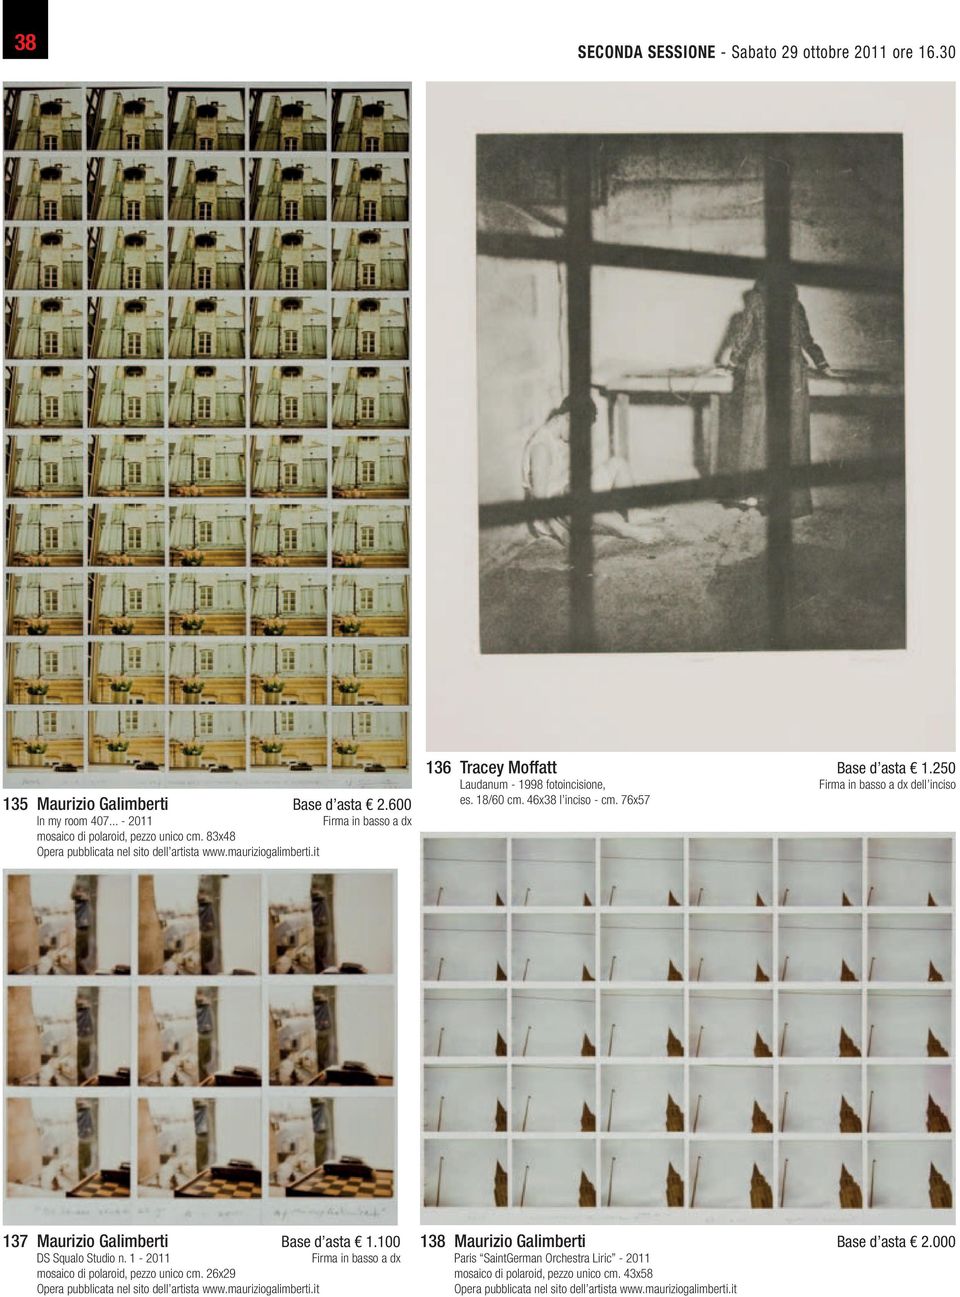 76x57 dell inciso 137 Maurizio Galimberti Base d asta 1.100 DS Squalo Studio n. 1-2011 mosaico di polaroid, pezzo unico cm. 26x29 Opera pubblicata nel sito dell artista www.